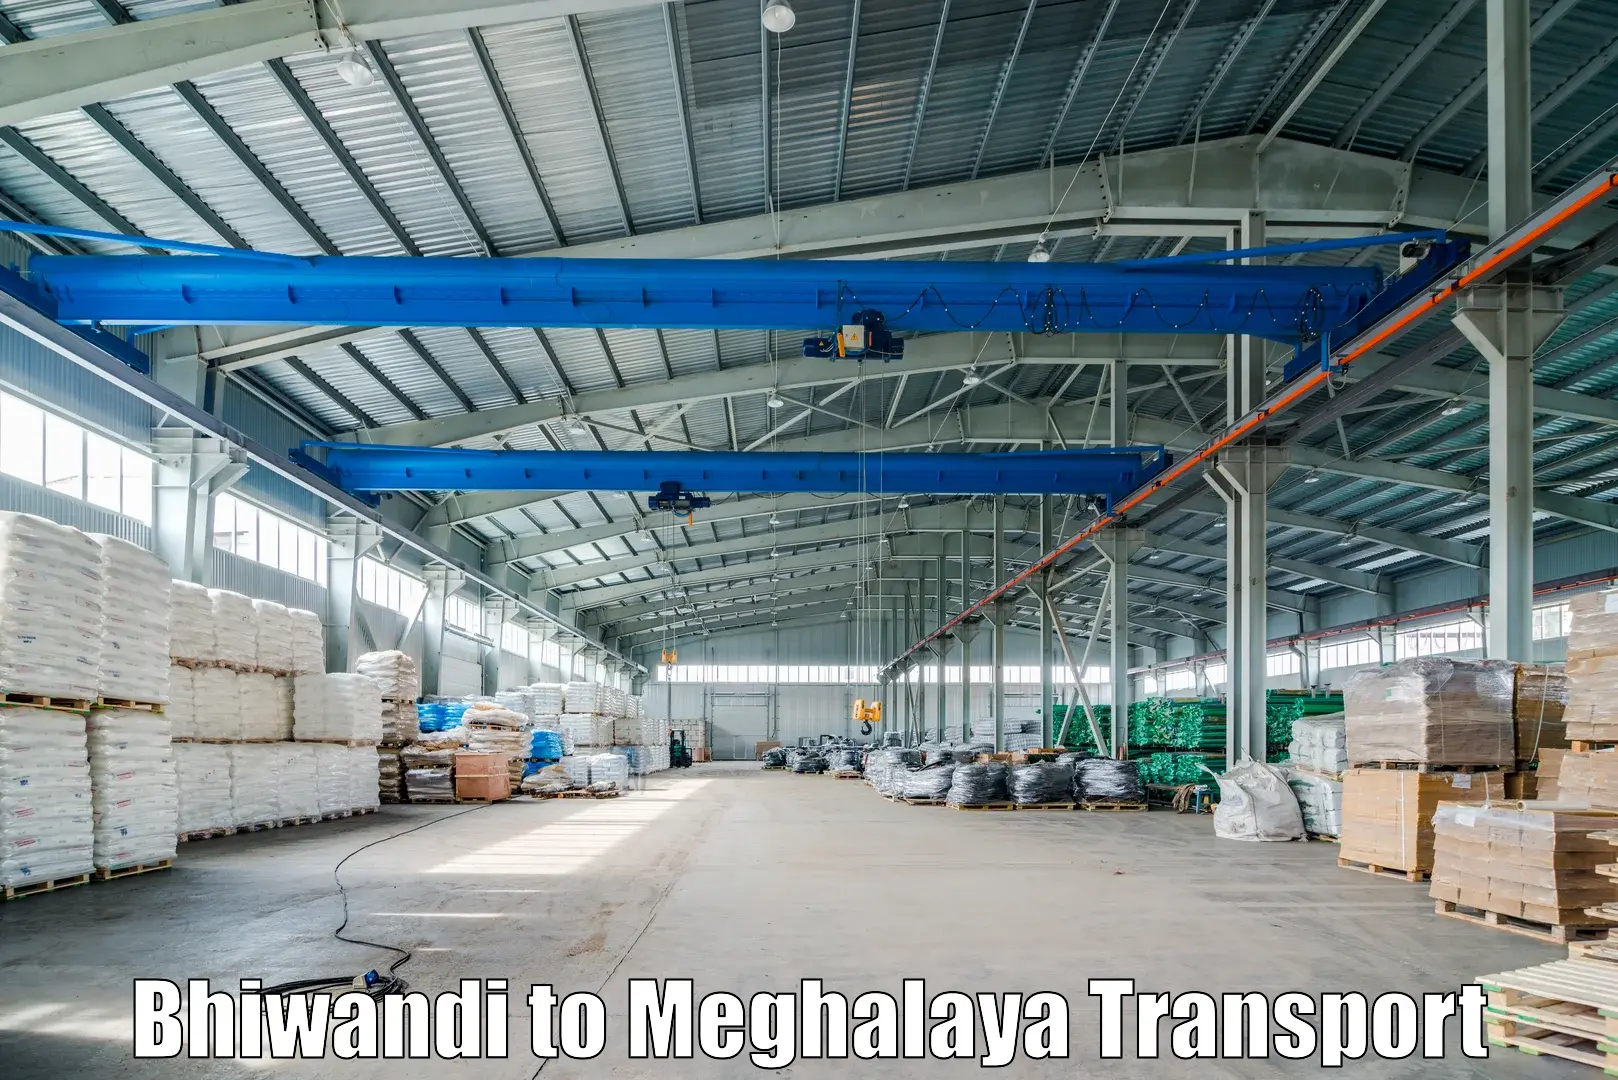 Nearby transport service Bhiwandi to Meghalaya